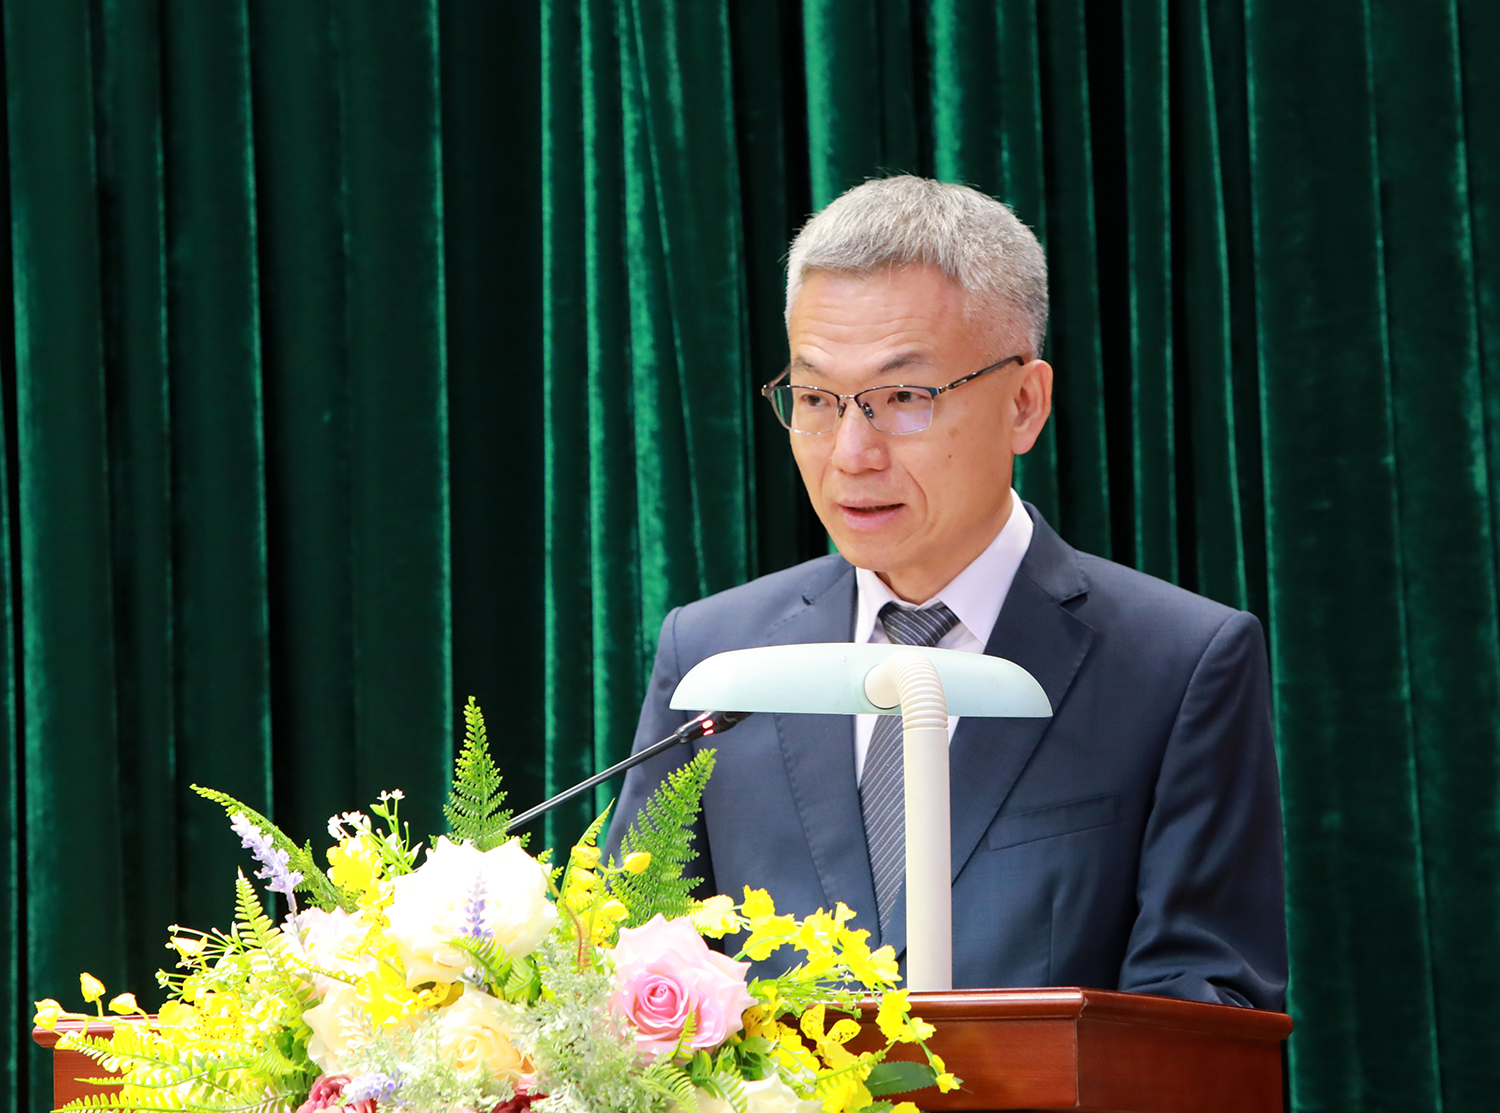 Ông Trang Tư Ức, đại diện nhà đầu tư Ingrasys (Singapore) Pte.Ltd phát biểu tại buổi lễ